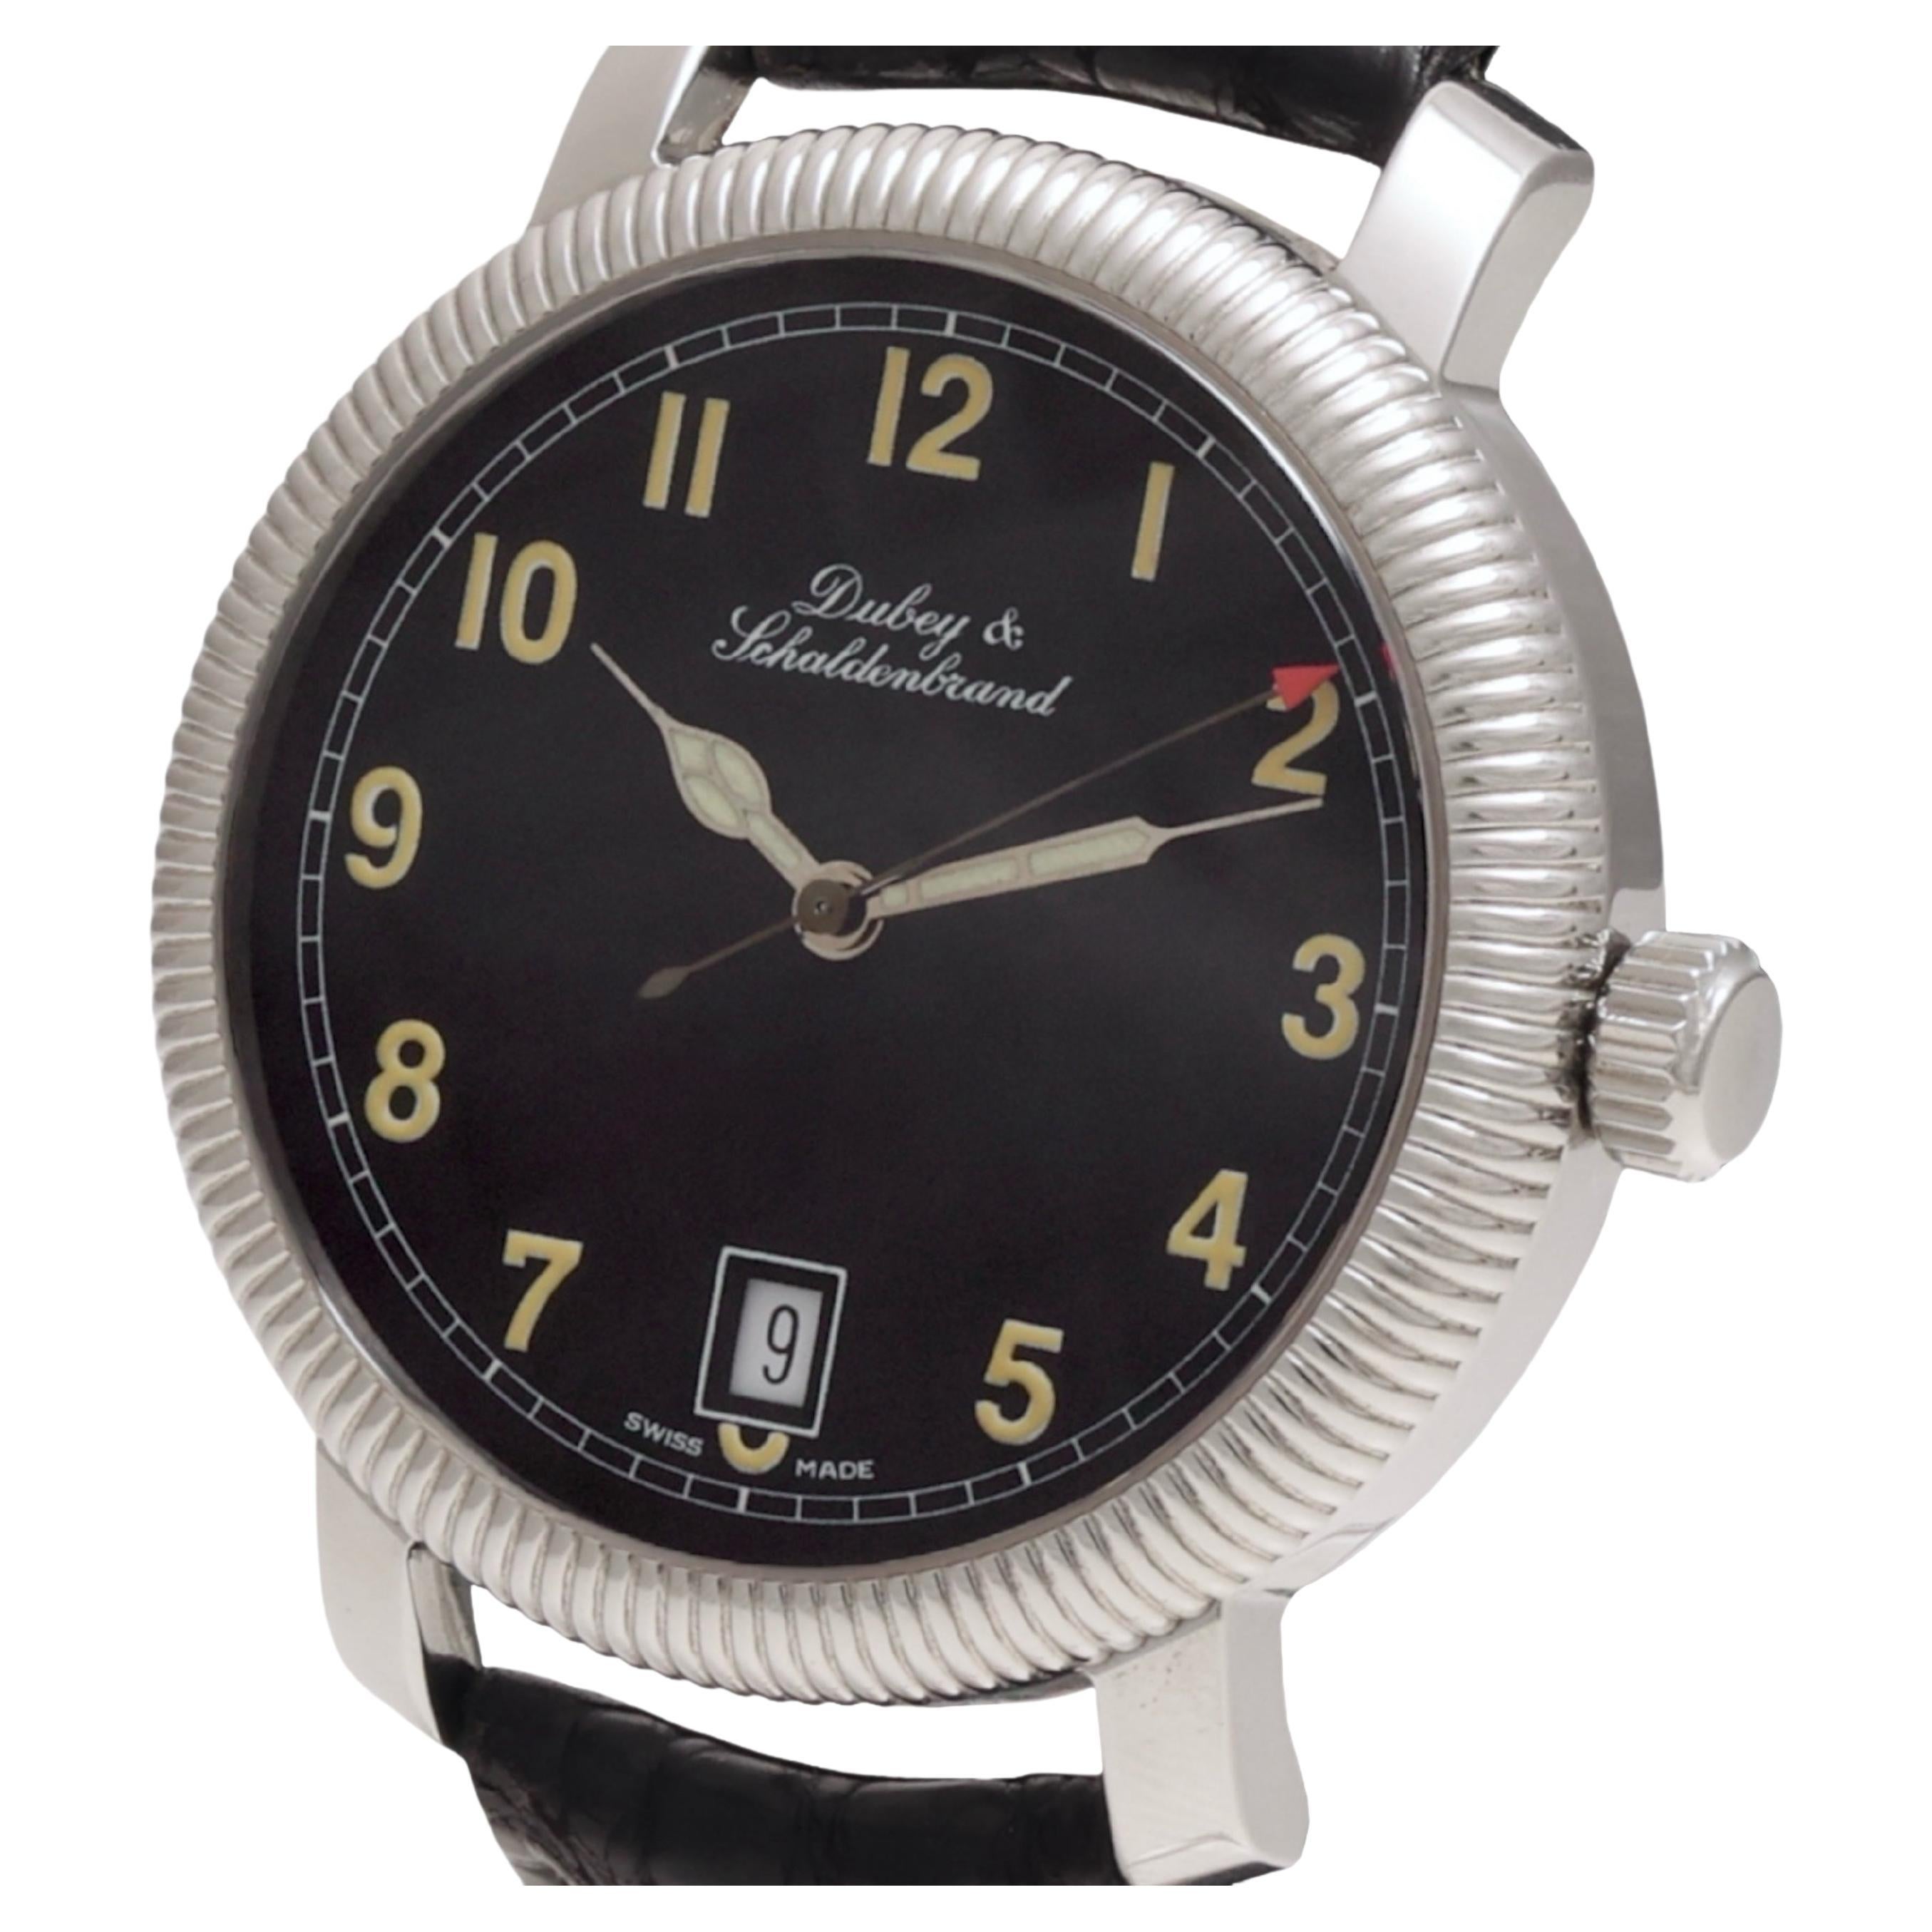 Dubey & Schaldenbrand Steel Wristwatch, Automatic, Swiss Made